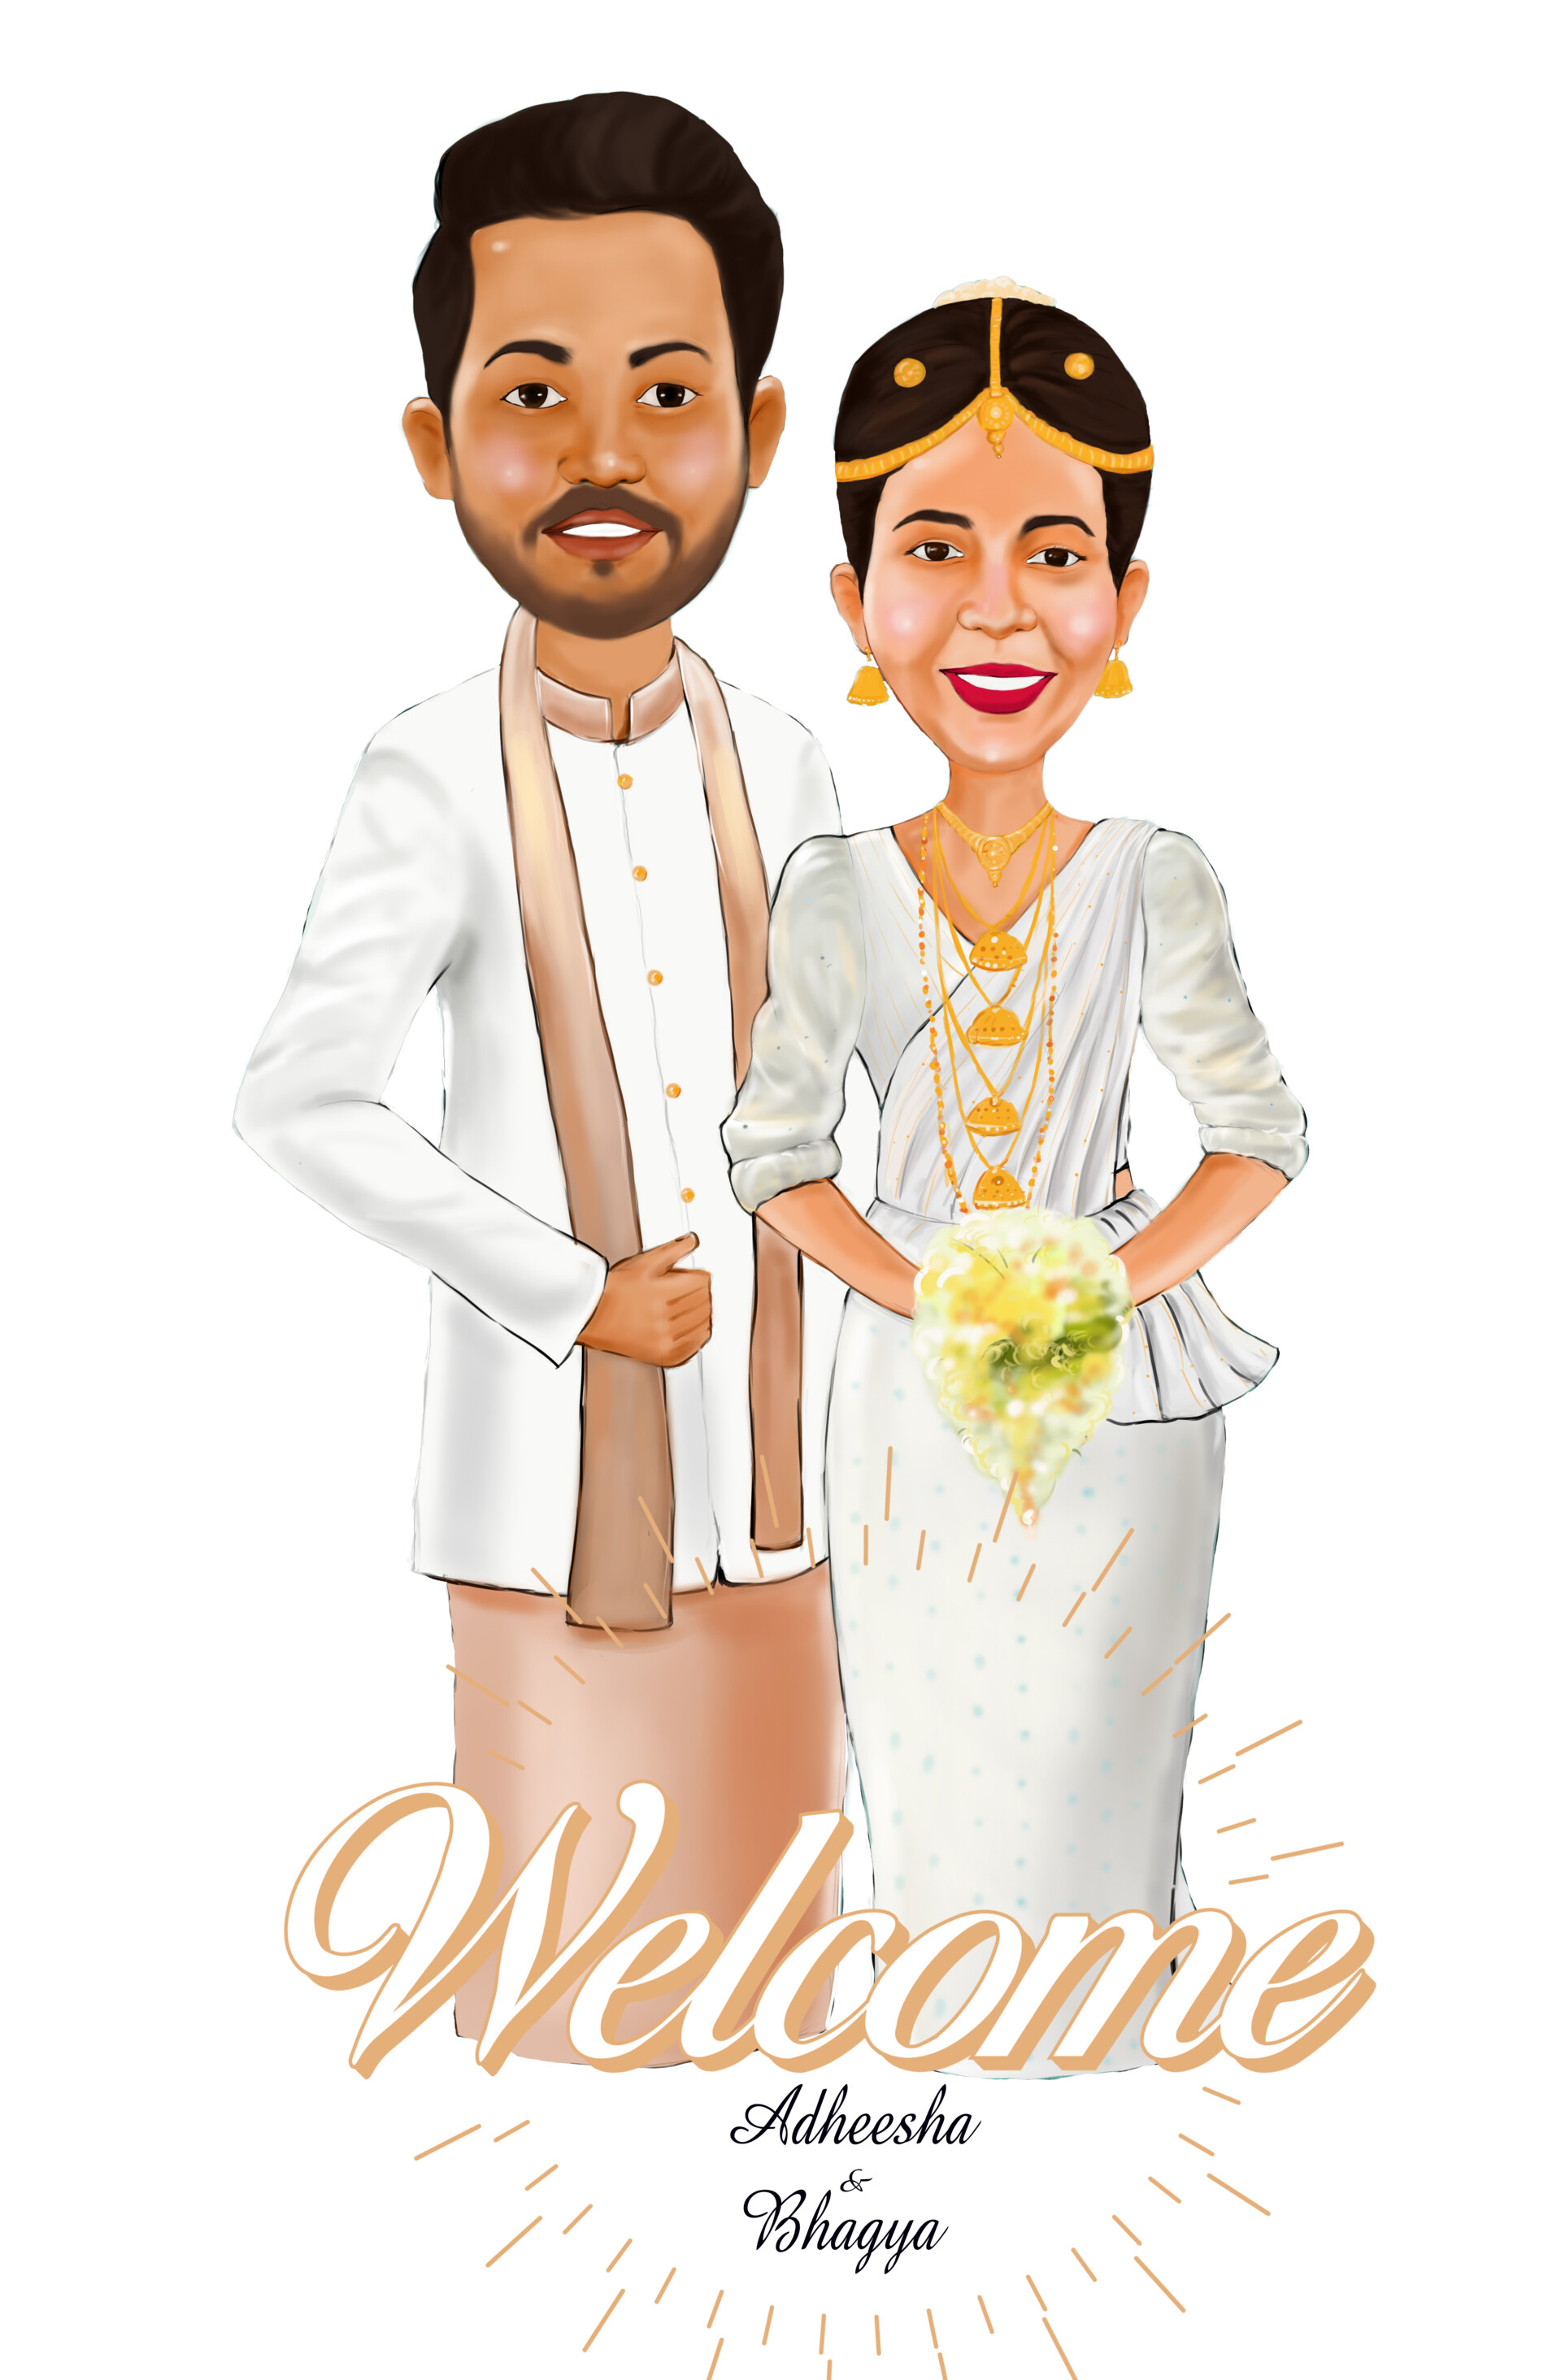 ArtStation - Wedding couple cartoon Illustration